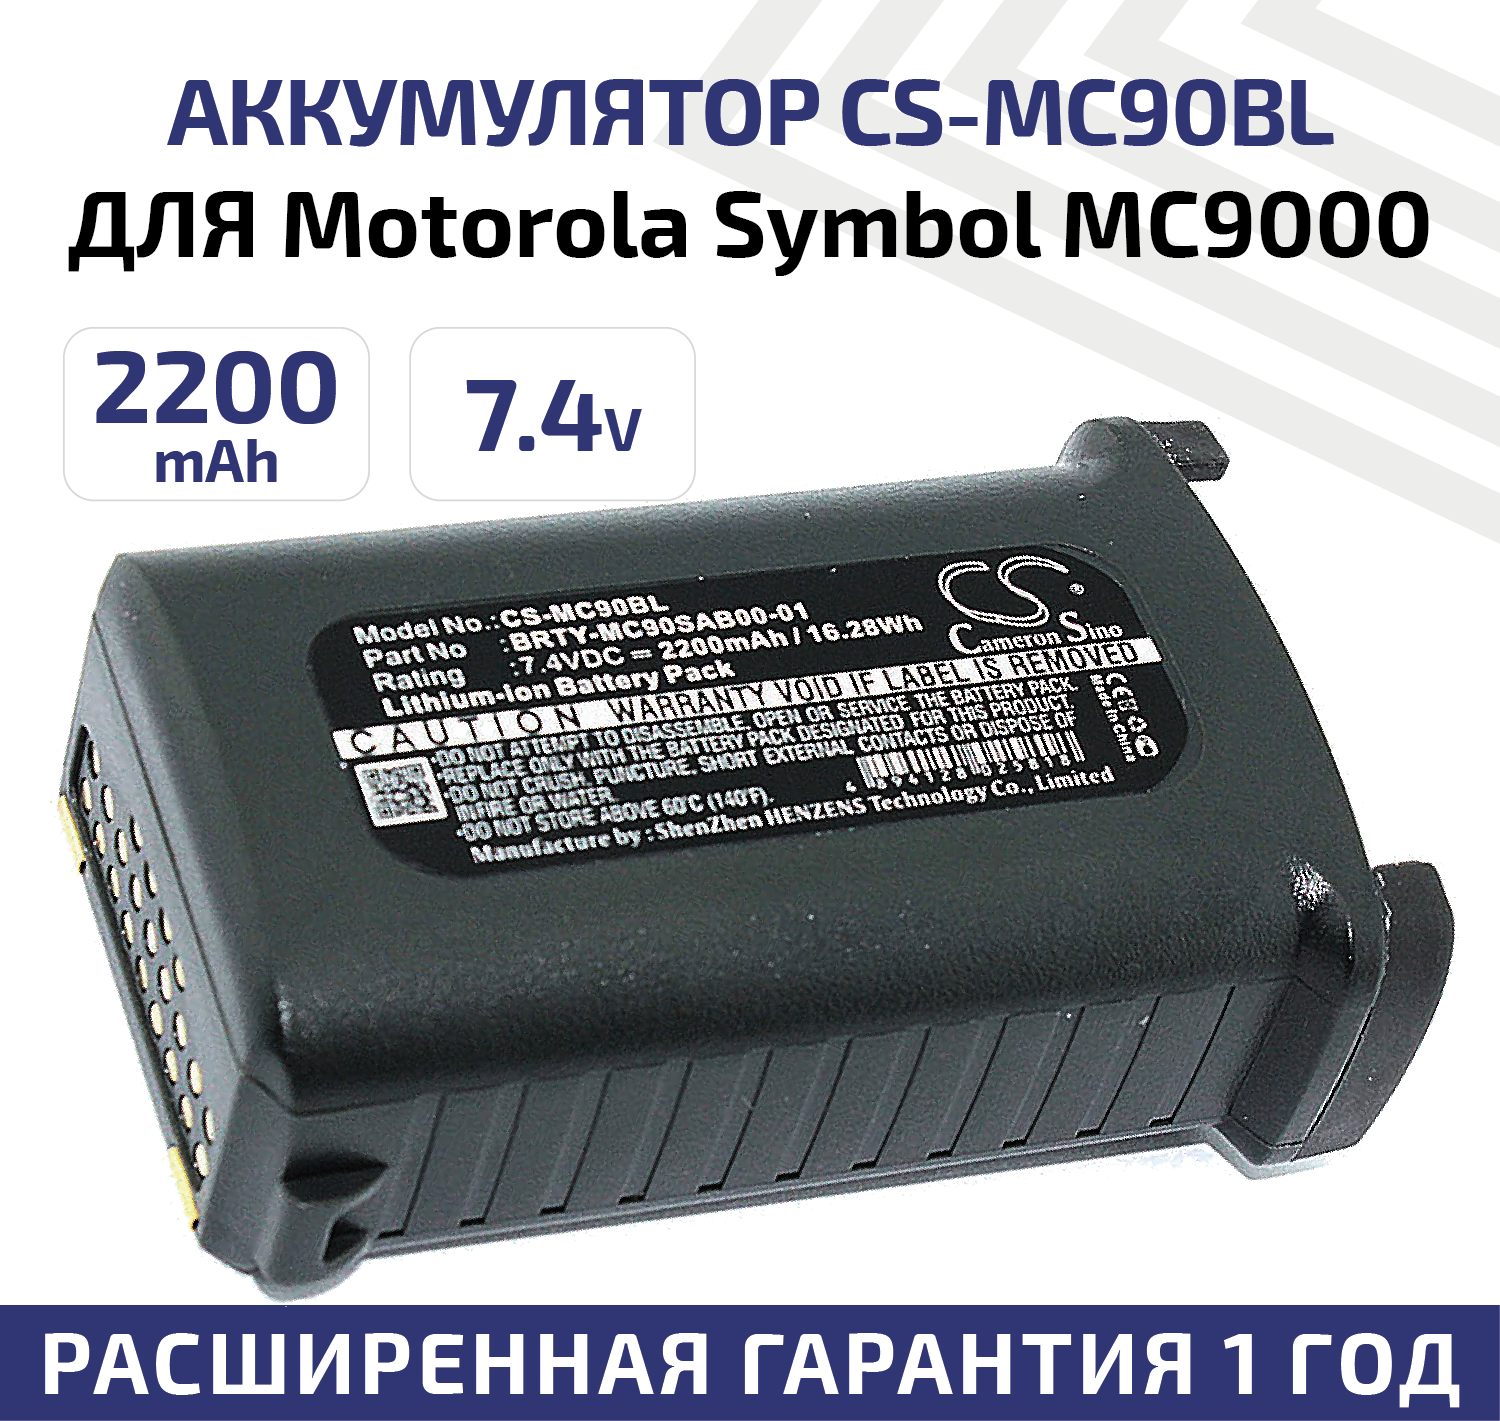 Аккумуляторная батарея Cs-mc90bl для терминала сбора данных Motorola Symbol MC9000 7.4V 2200mAh Cs-m